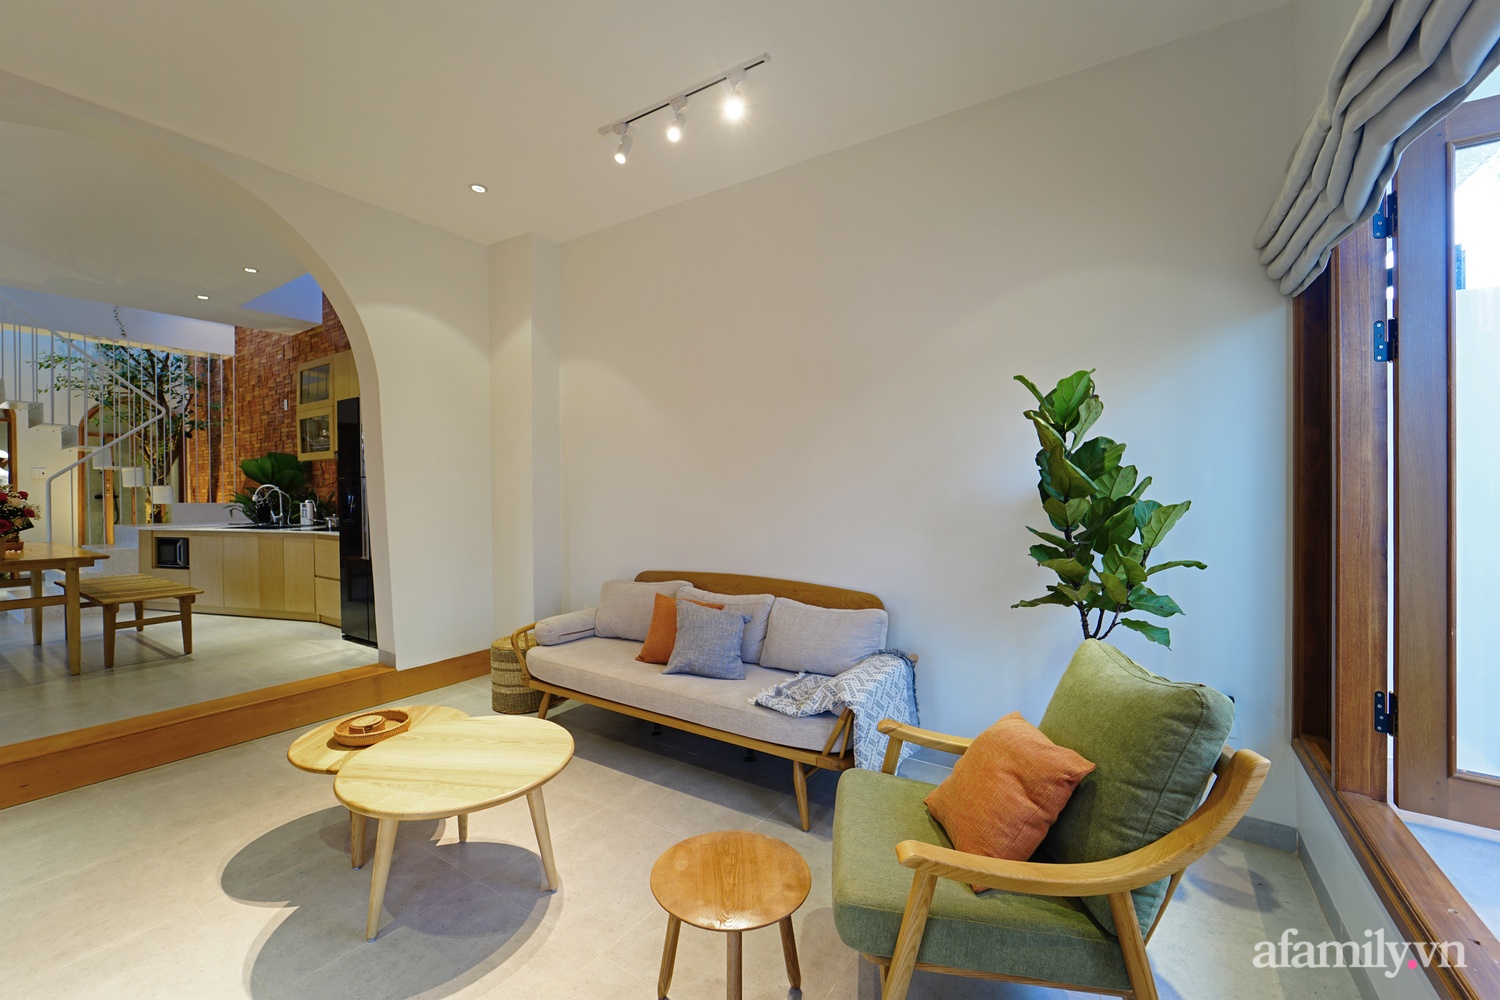  Không gian phòng khách được thiết kế ấn tượng với ghế sofa văng khung gỗ, ghế đơn cũng được chọn khung gỗ để tăng tính kết nối với tổng thể.